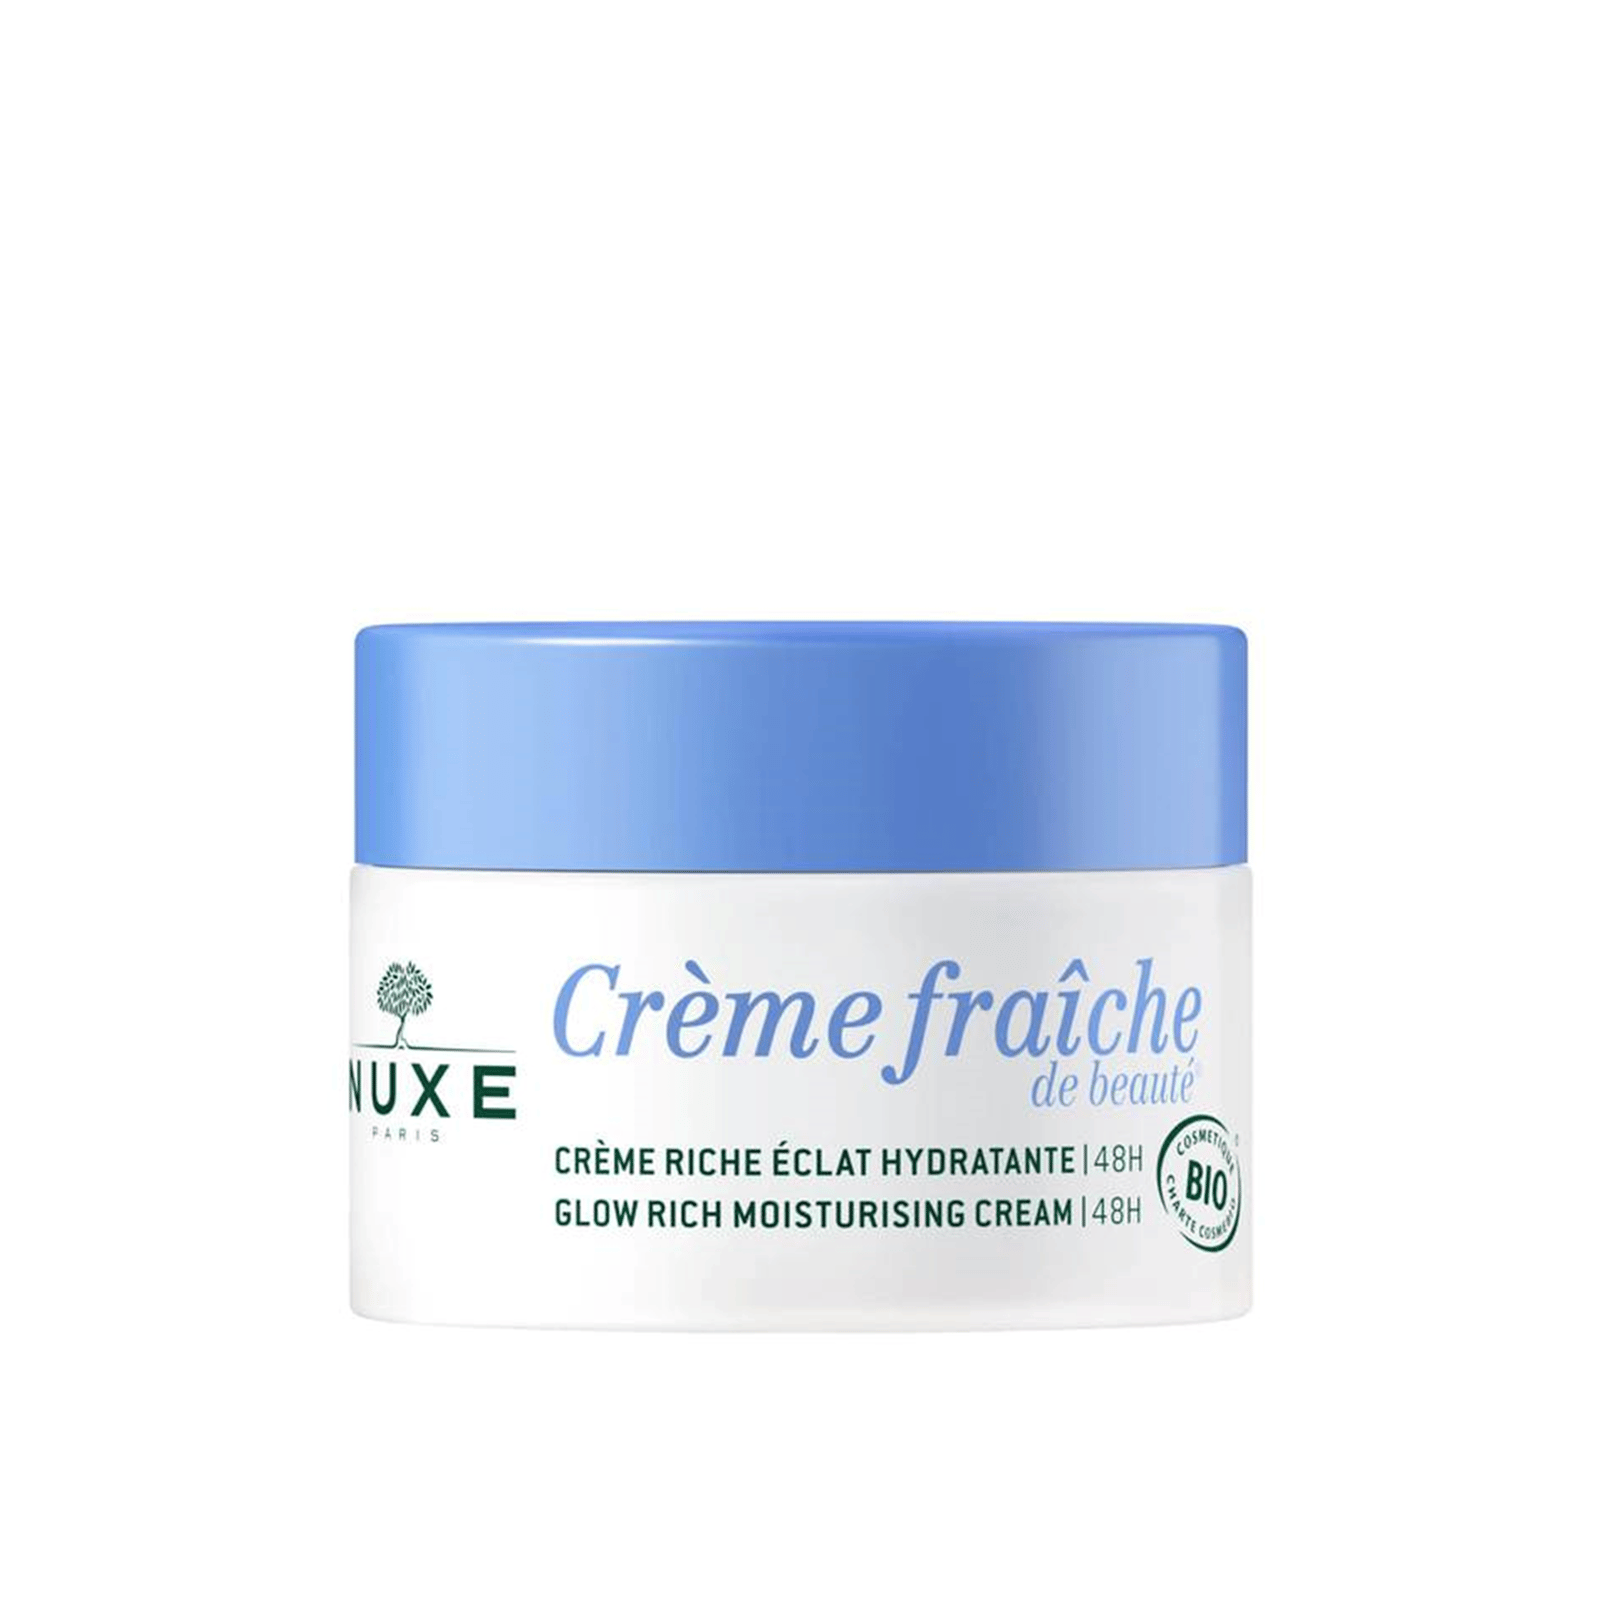 NUXE Crème Fraîche Glow Rich Moisturizing Cream 50ml